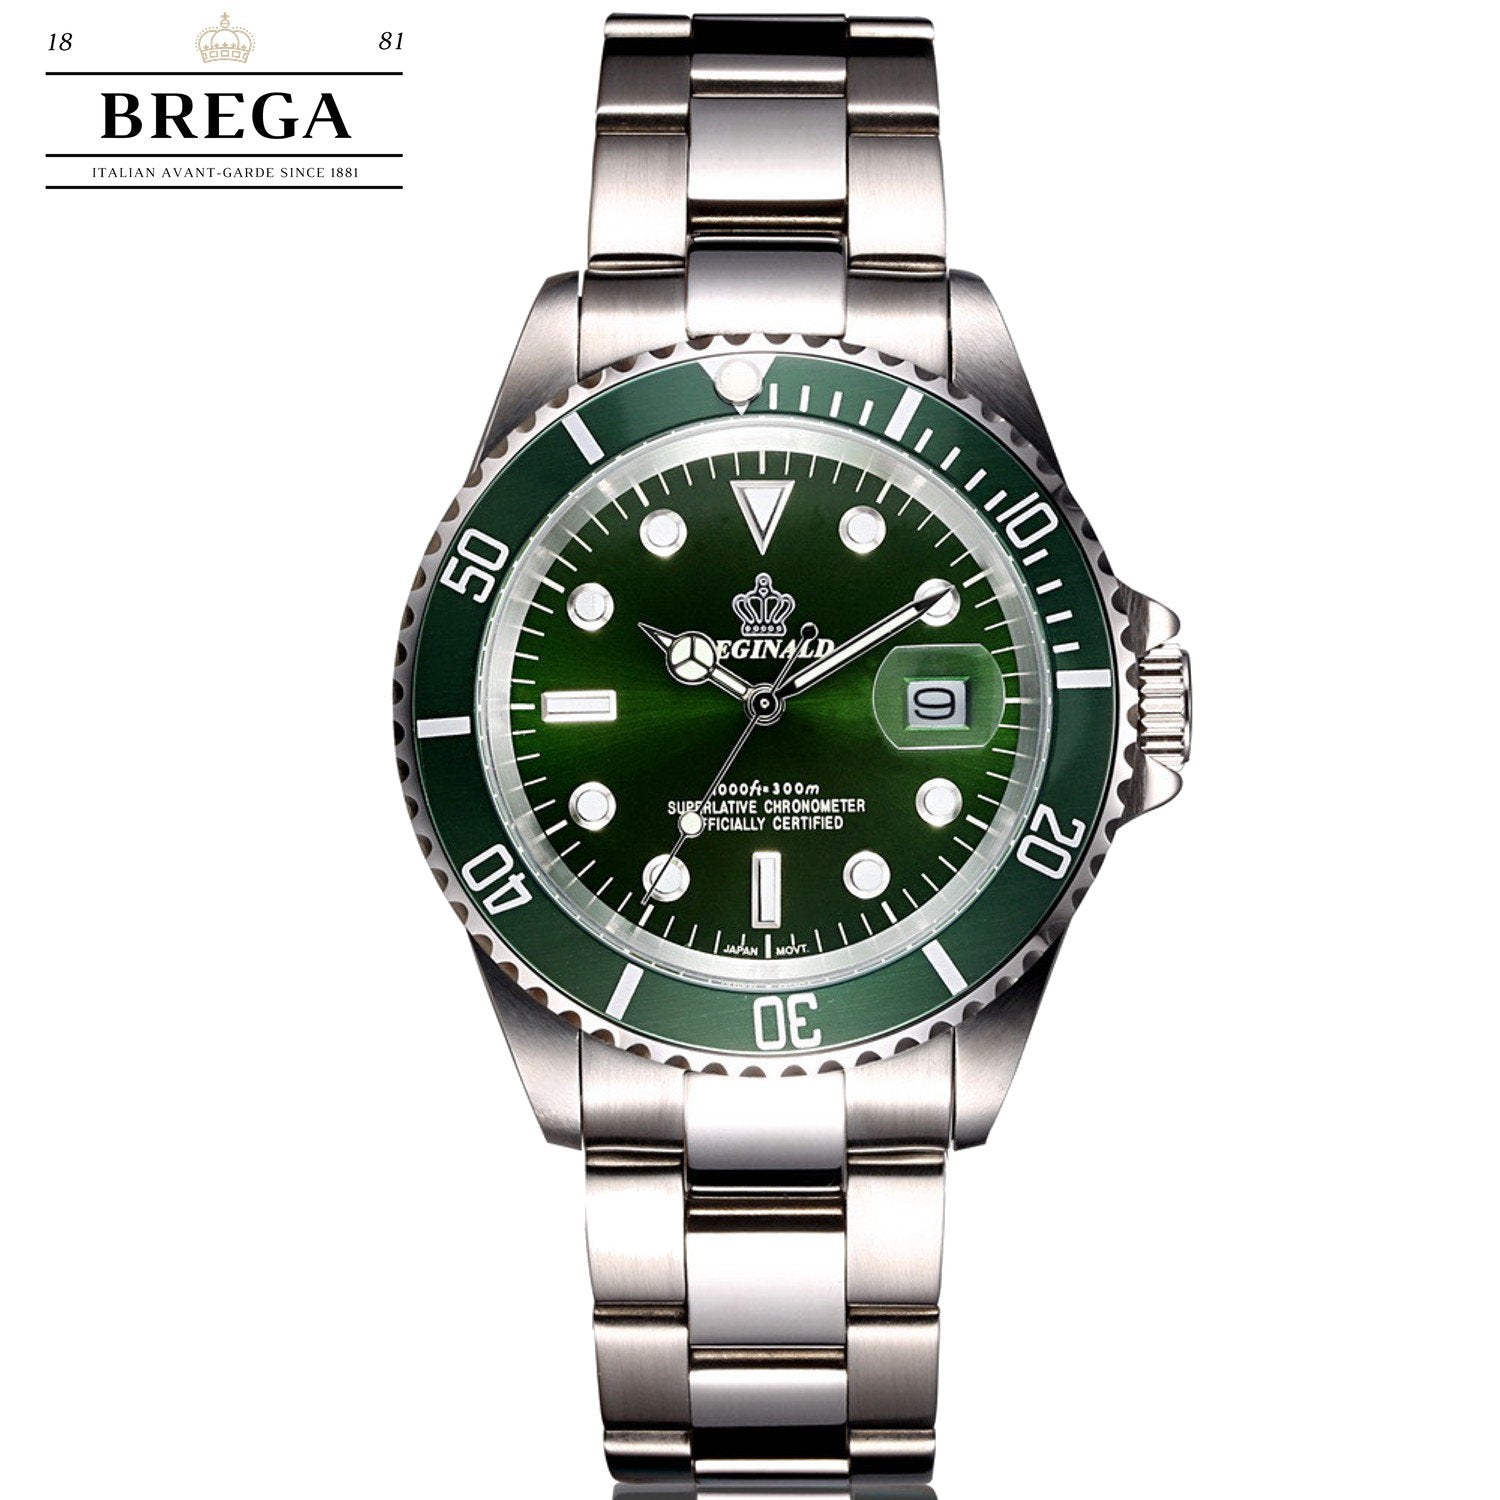 E612 RENAISSANCE - Brega Watches